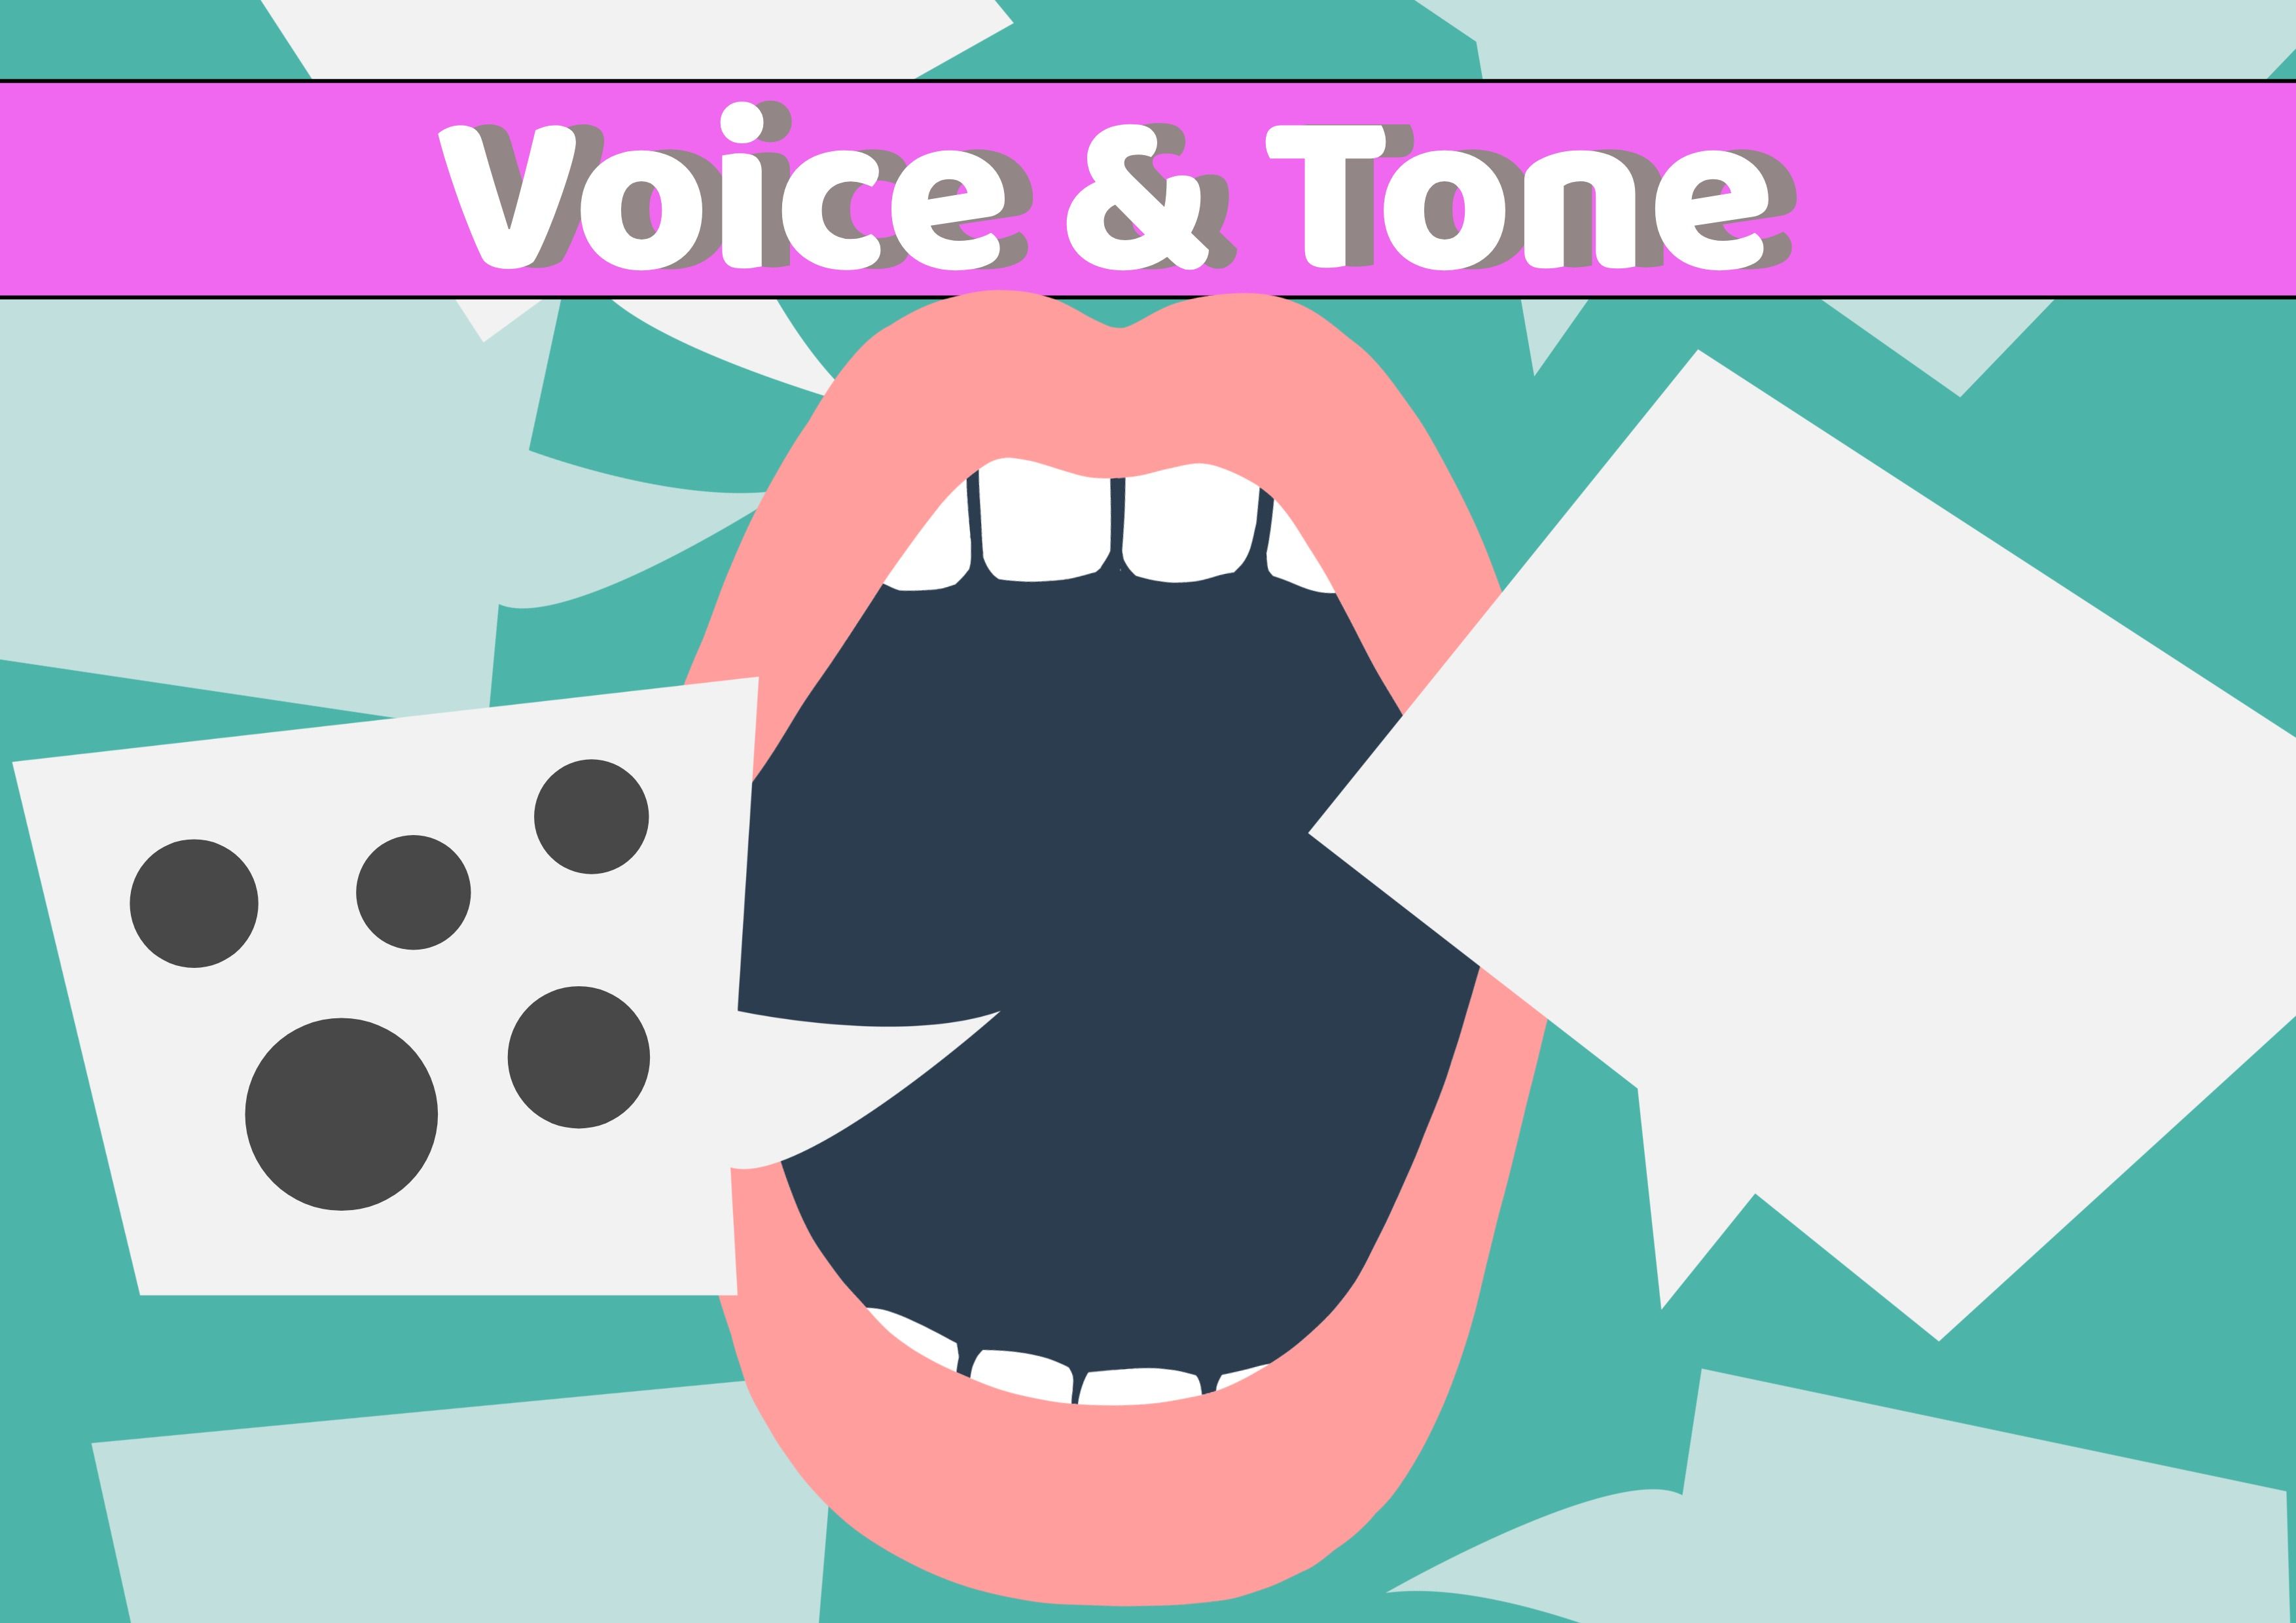 Sprach- und Tonbild mit einem Mundsymbol und daraus hervorgehenden Sprechblasen